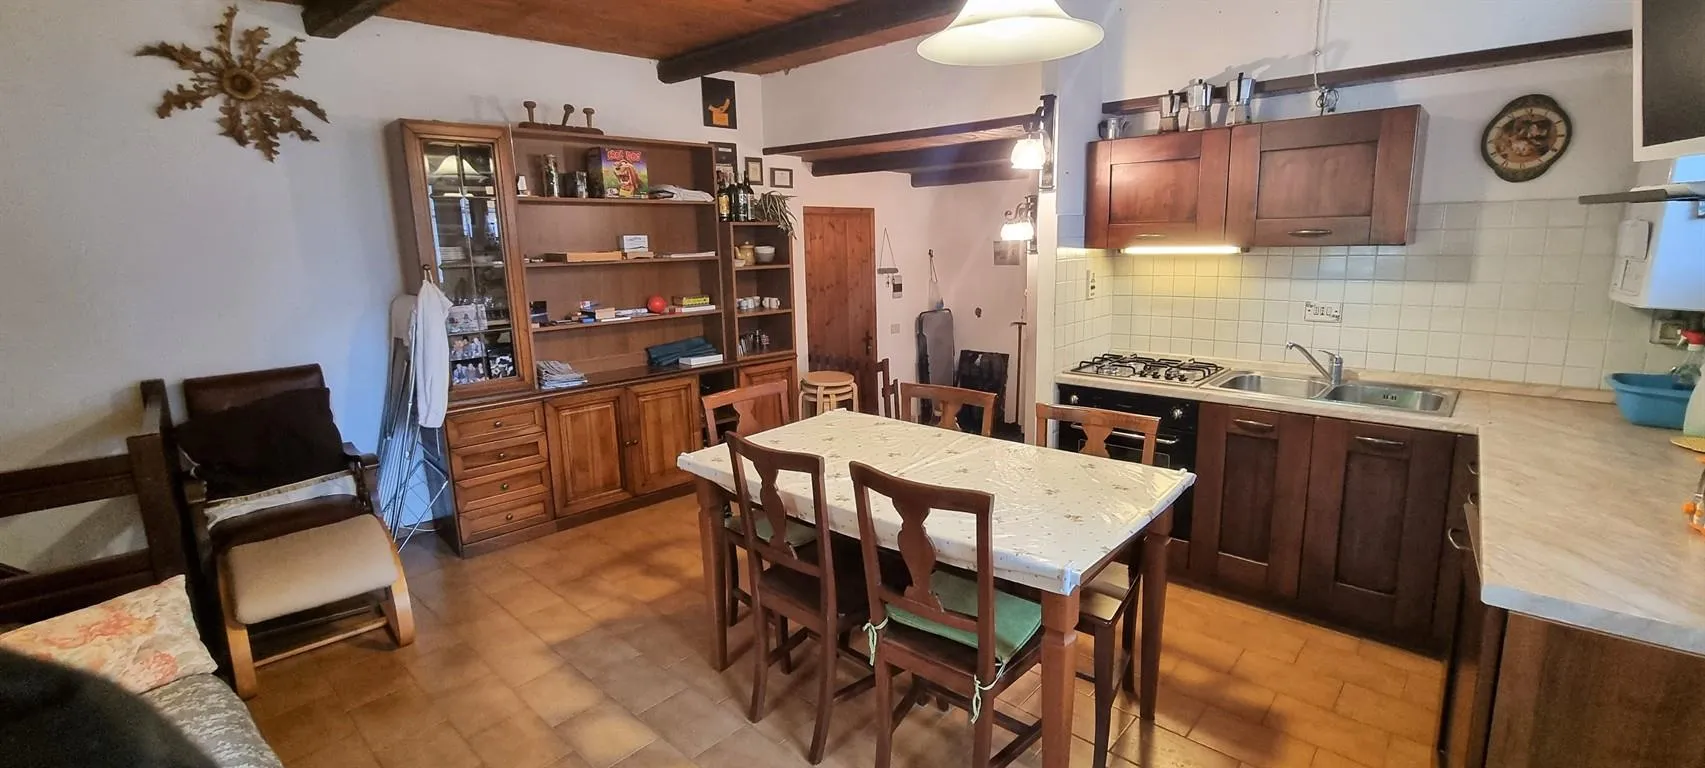 Immagine per Appartamento in vendita a Cesana Torinese frazione mollieres 25